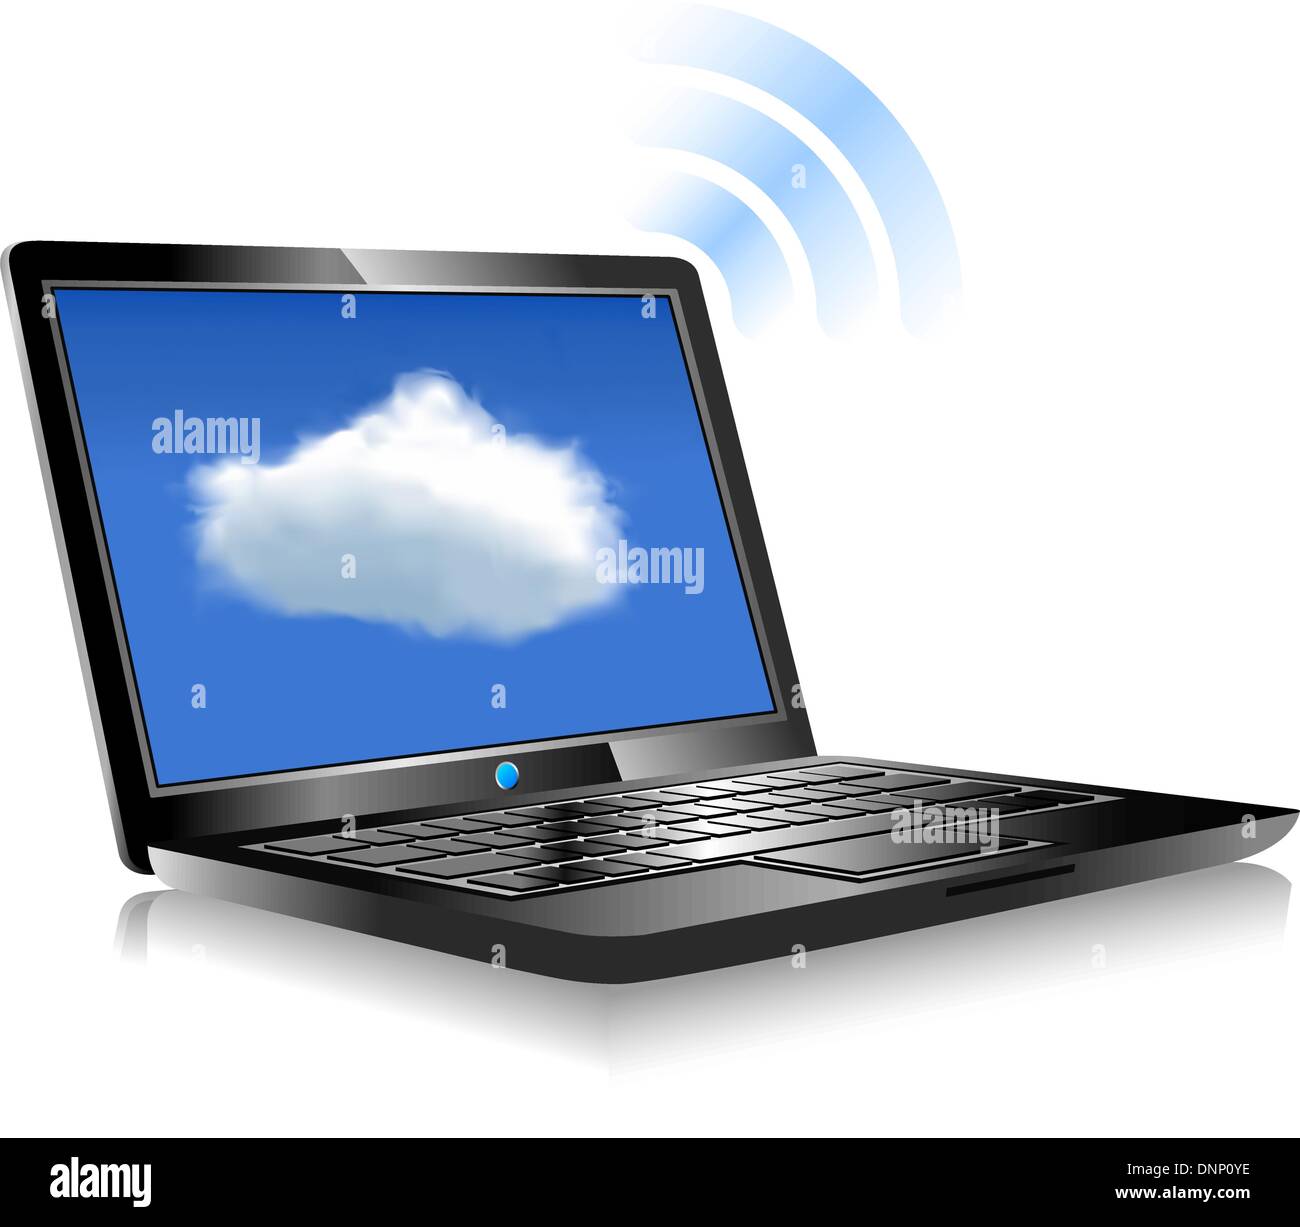 Les ordinateurs client ordinateur de communiquer avec les ressources situées dans le cloud computing Illustration de Vecteur